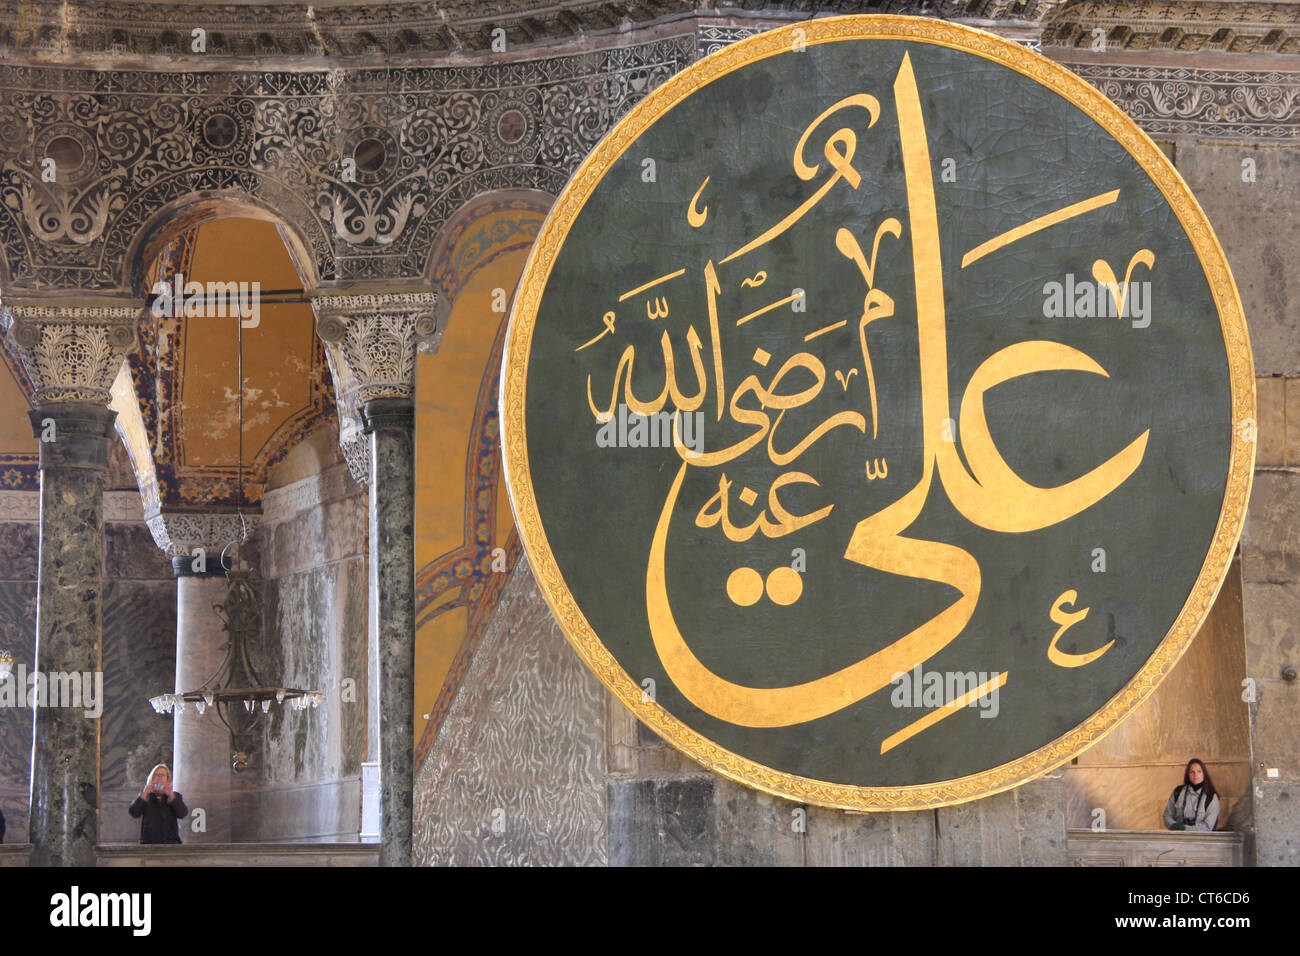 Medallion with arabic letters, Hagia Sophia, Sultanahmet, Istanbul, Turkey Stock Photo